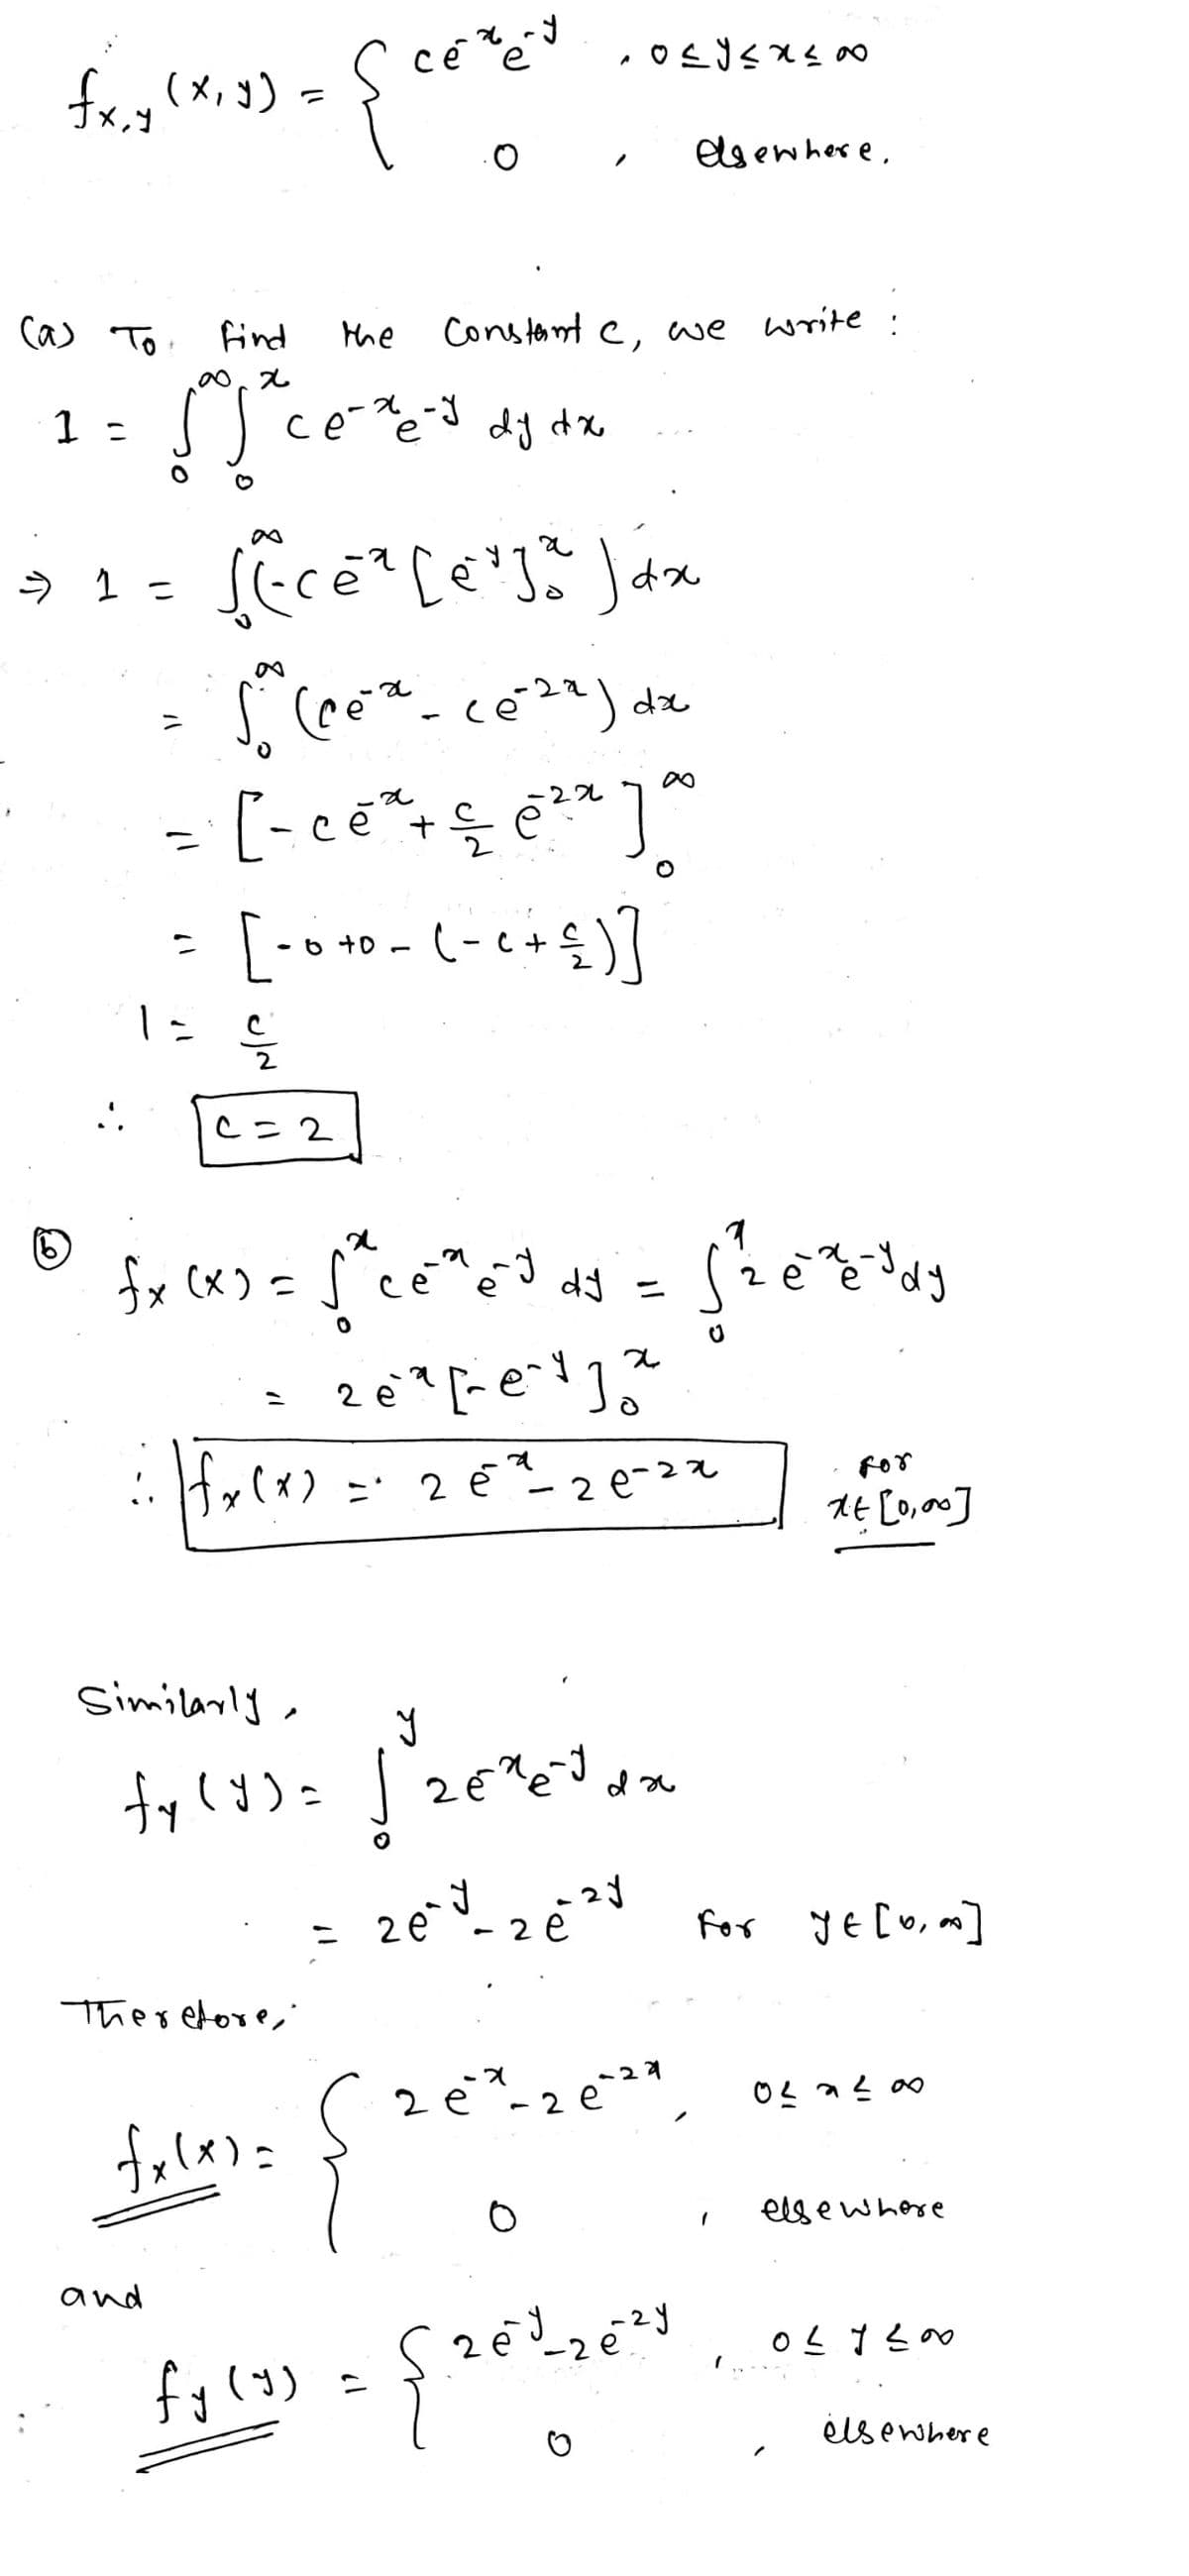 fx,y (x, y) =
(a) To find
∞0x
1 =
[Sce
- 1 =
..
=
and
the
се-хе-у
ce-xe-J dy dx
c=2
сечему
e
{
fecé² [erja Jáx
dx
a
-22
- [ - ce² + — ē ²² ]
√ (ce ² - ce²²²) dx
10
=
[ - 0 +0 - (- ₁ + ≤ ) ]
S2
fx (x)
посухую
Constant c, we write
(6)
fx (x) = √²ce³e³ ds = [ ²2 e ² dy
J
x
26²² [²e²1²
Therefore,
fxlx)=
Similarly,
y
fy (y) = √2€²e²³ da
fy (y)
x) = 2 ē²²-20-22
elsewhere.
zey-2e²1
26
O
= {26³ 26²3
For
xt [0,00]
-X
2 é* - 2 €²²*, 0²*²00
-29
e
e
For YE [0,0]
elsewhere
027200
elsewhere